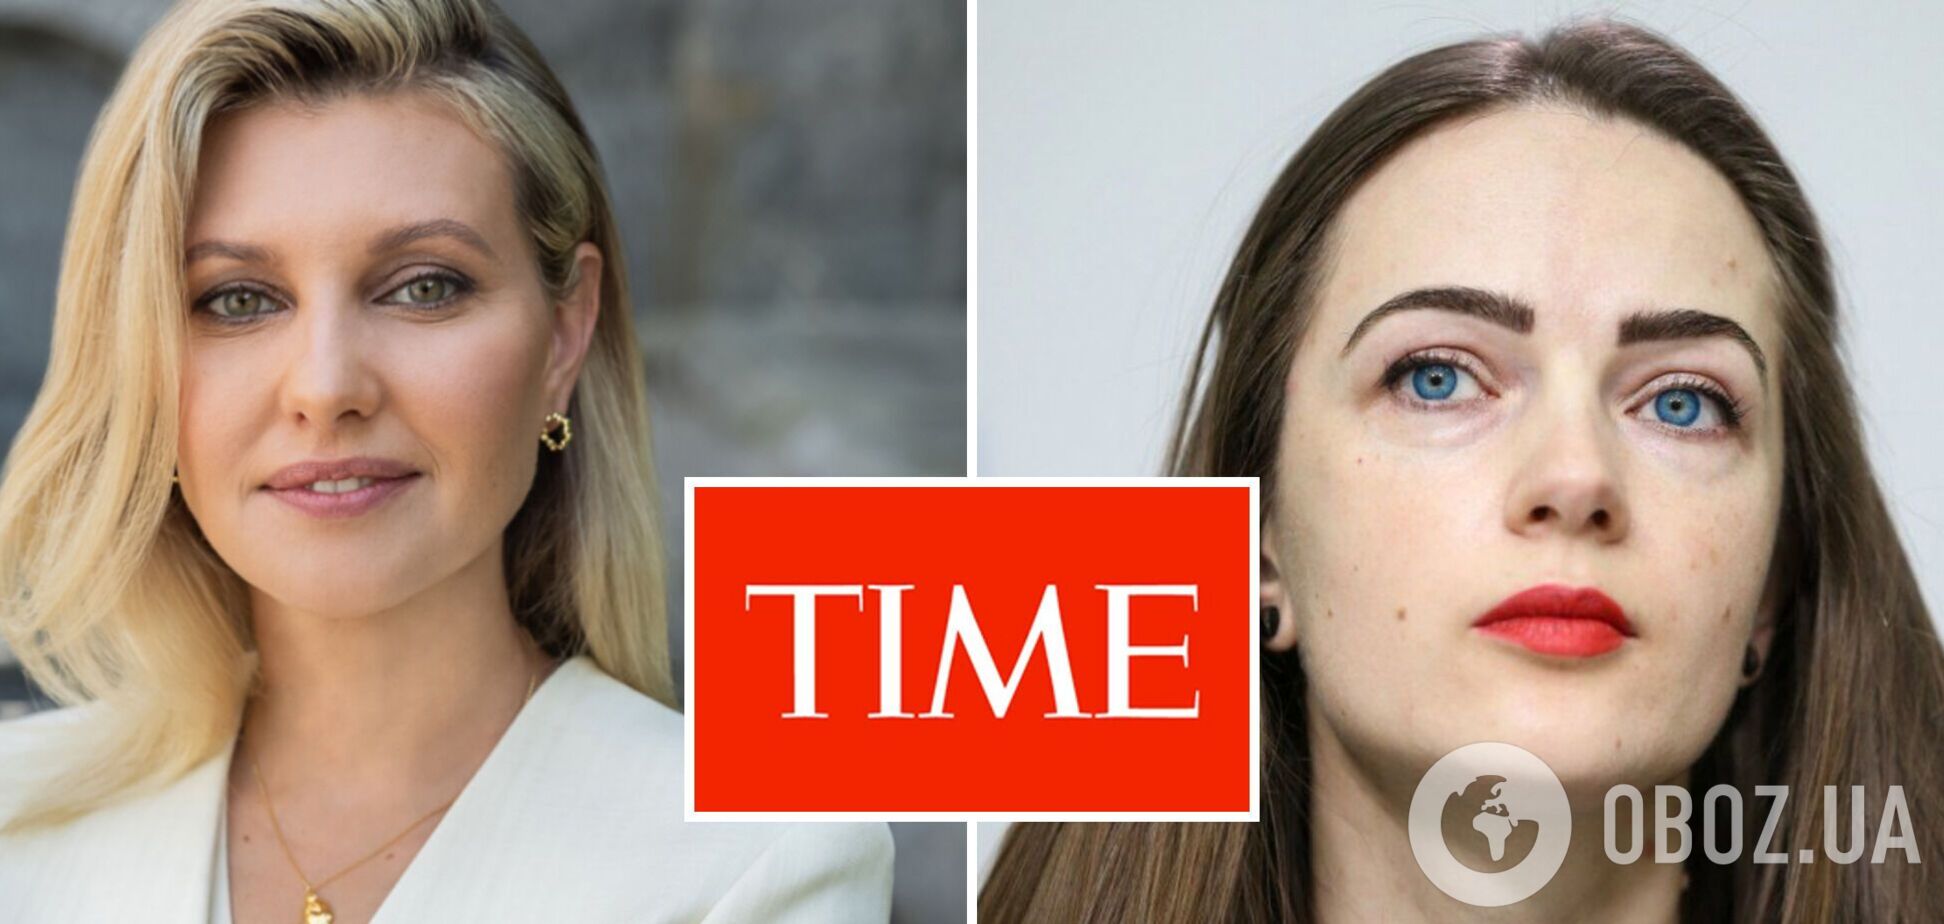 Олена Зеленська та нобелівська лауреатка Олександра Матвійчук увійшли до 100 найвпливовіших людей за версією журналу Time